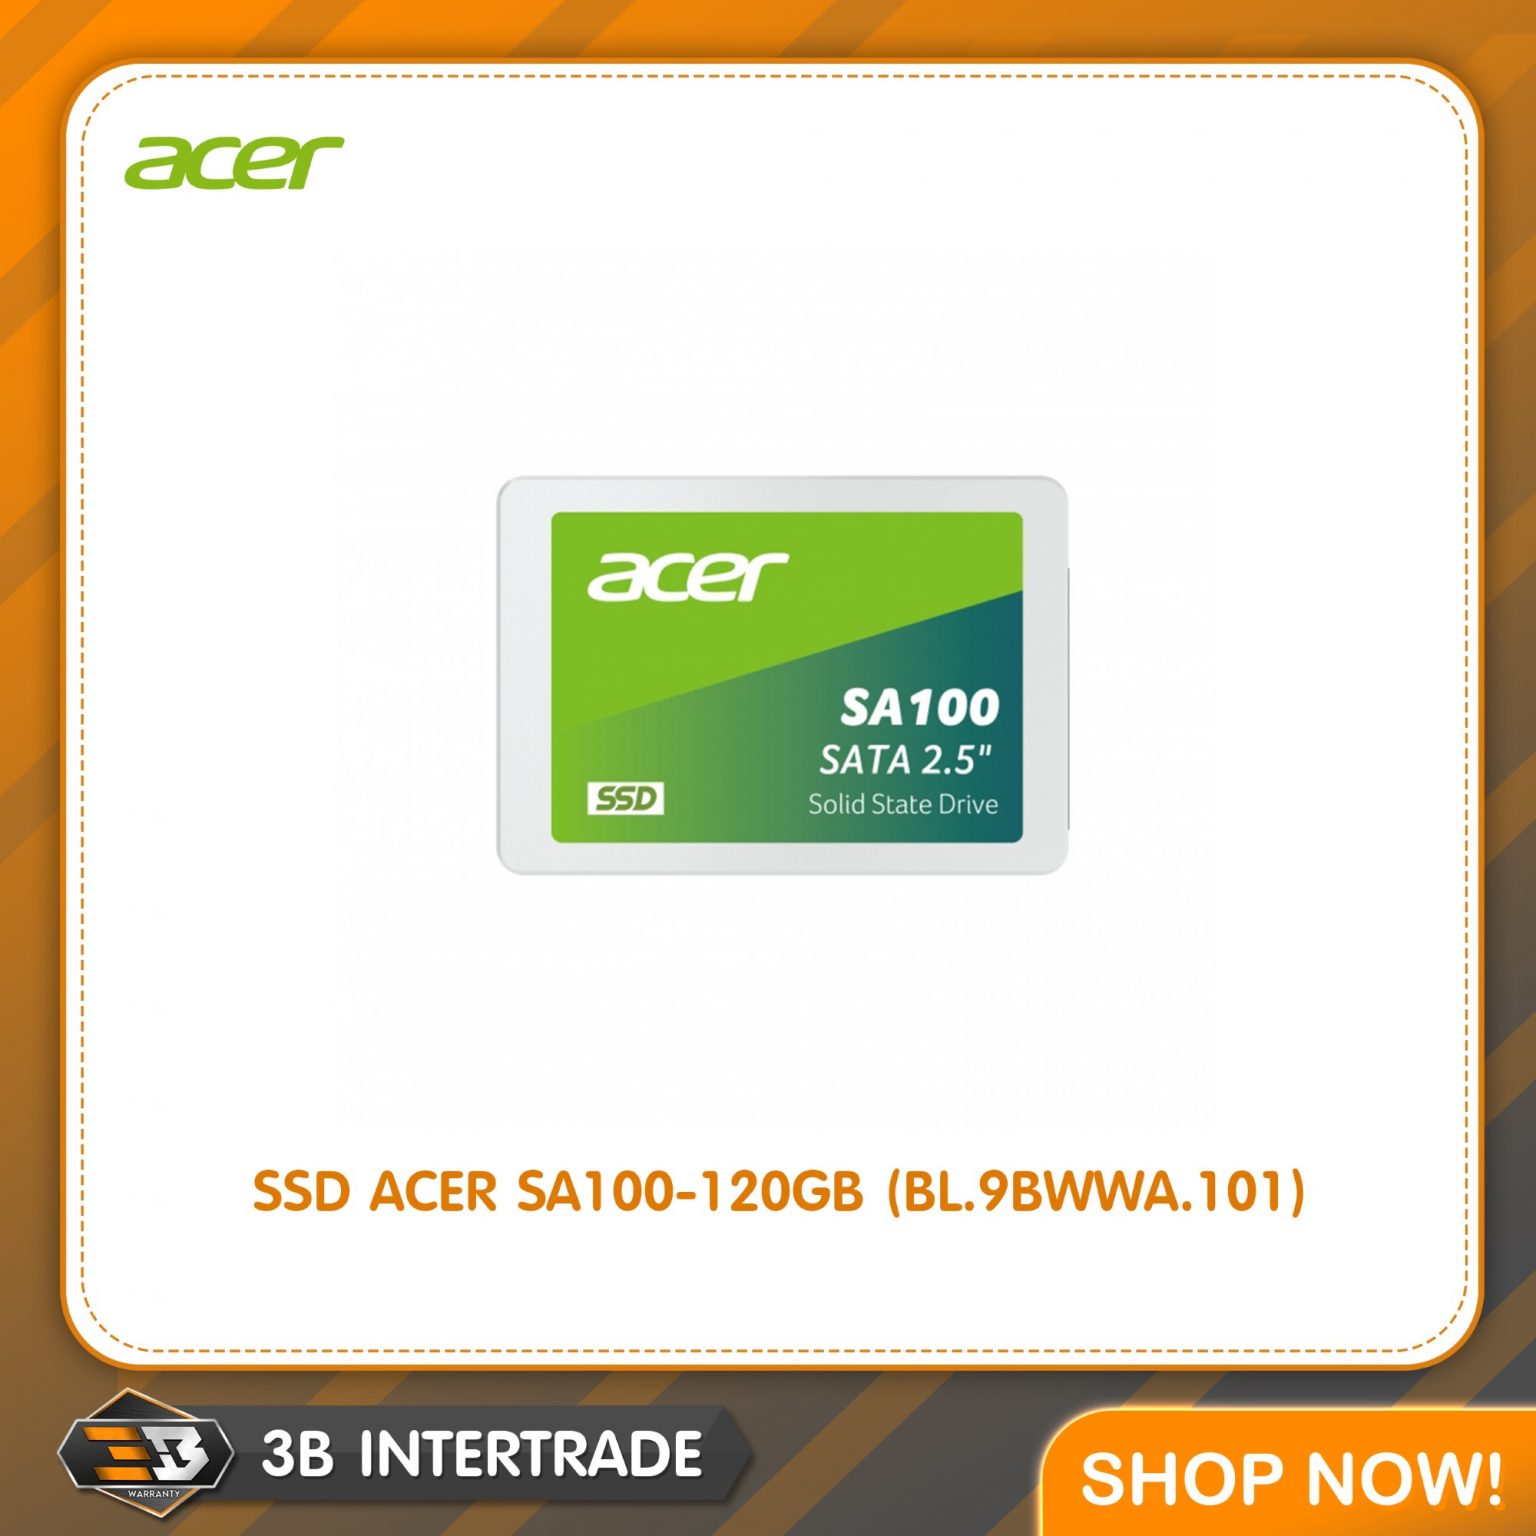 SSD ACER SA100-120GB (BL.9BWWA.101)